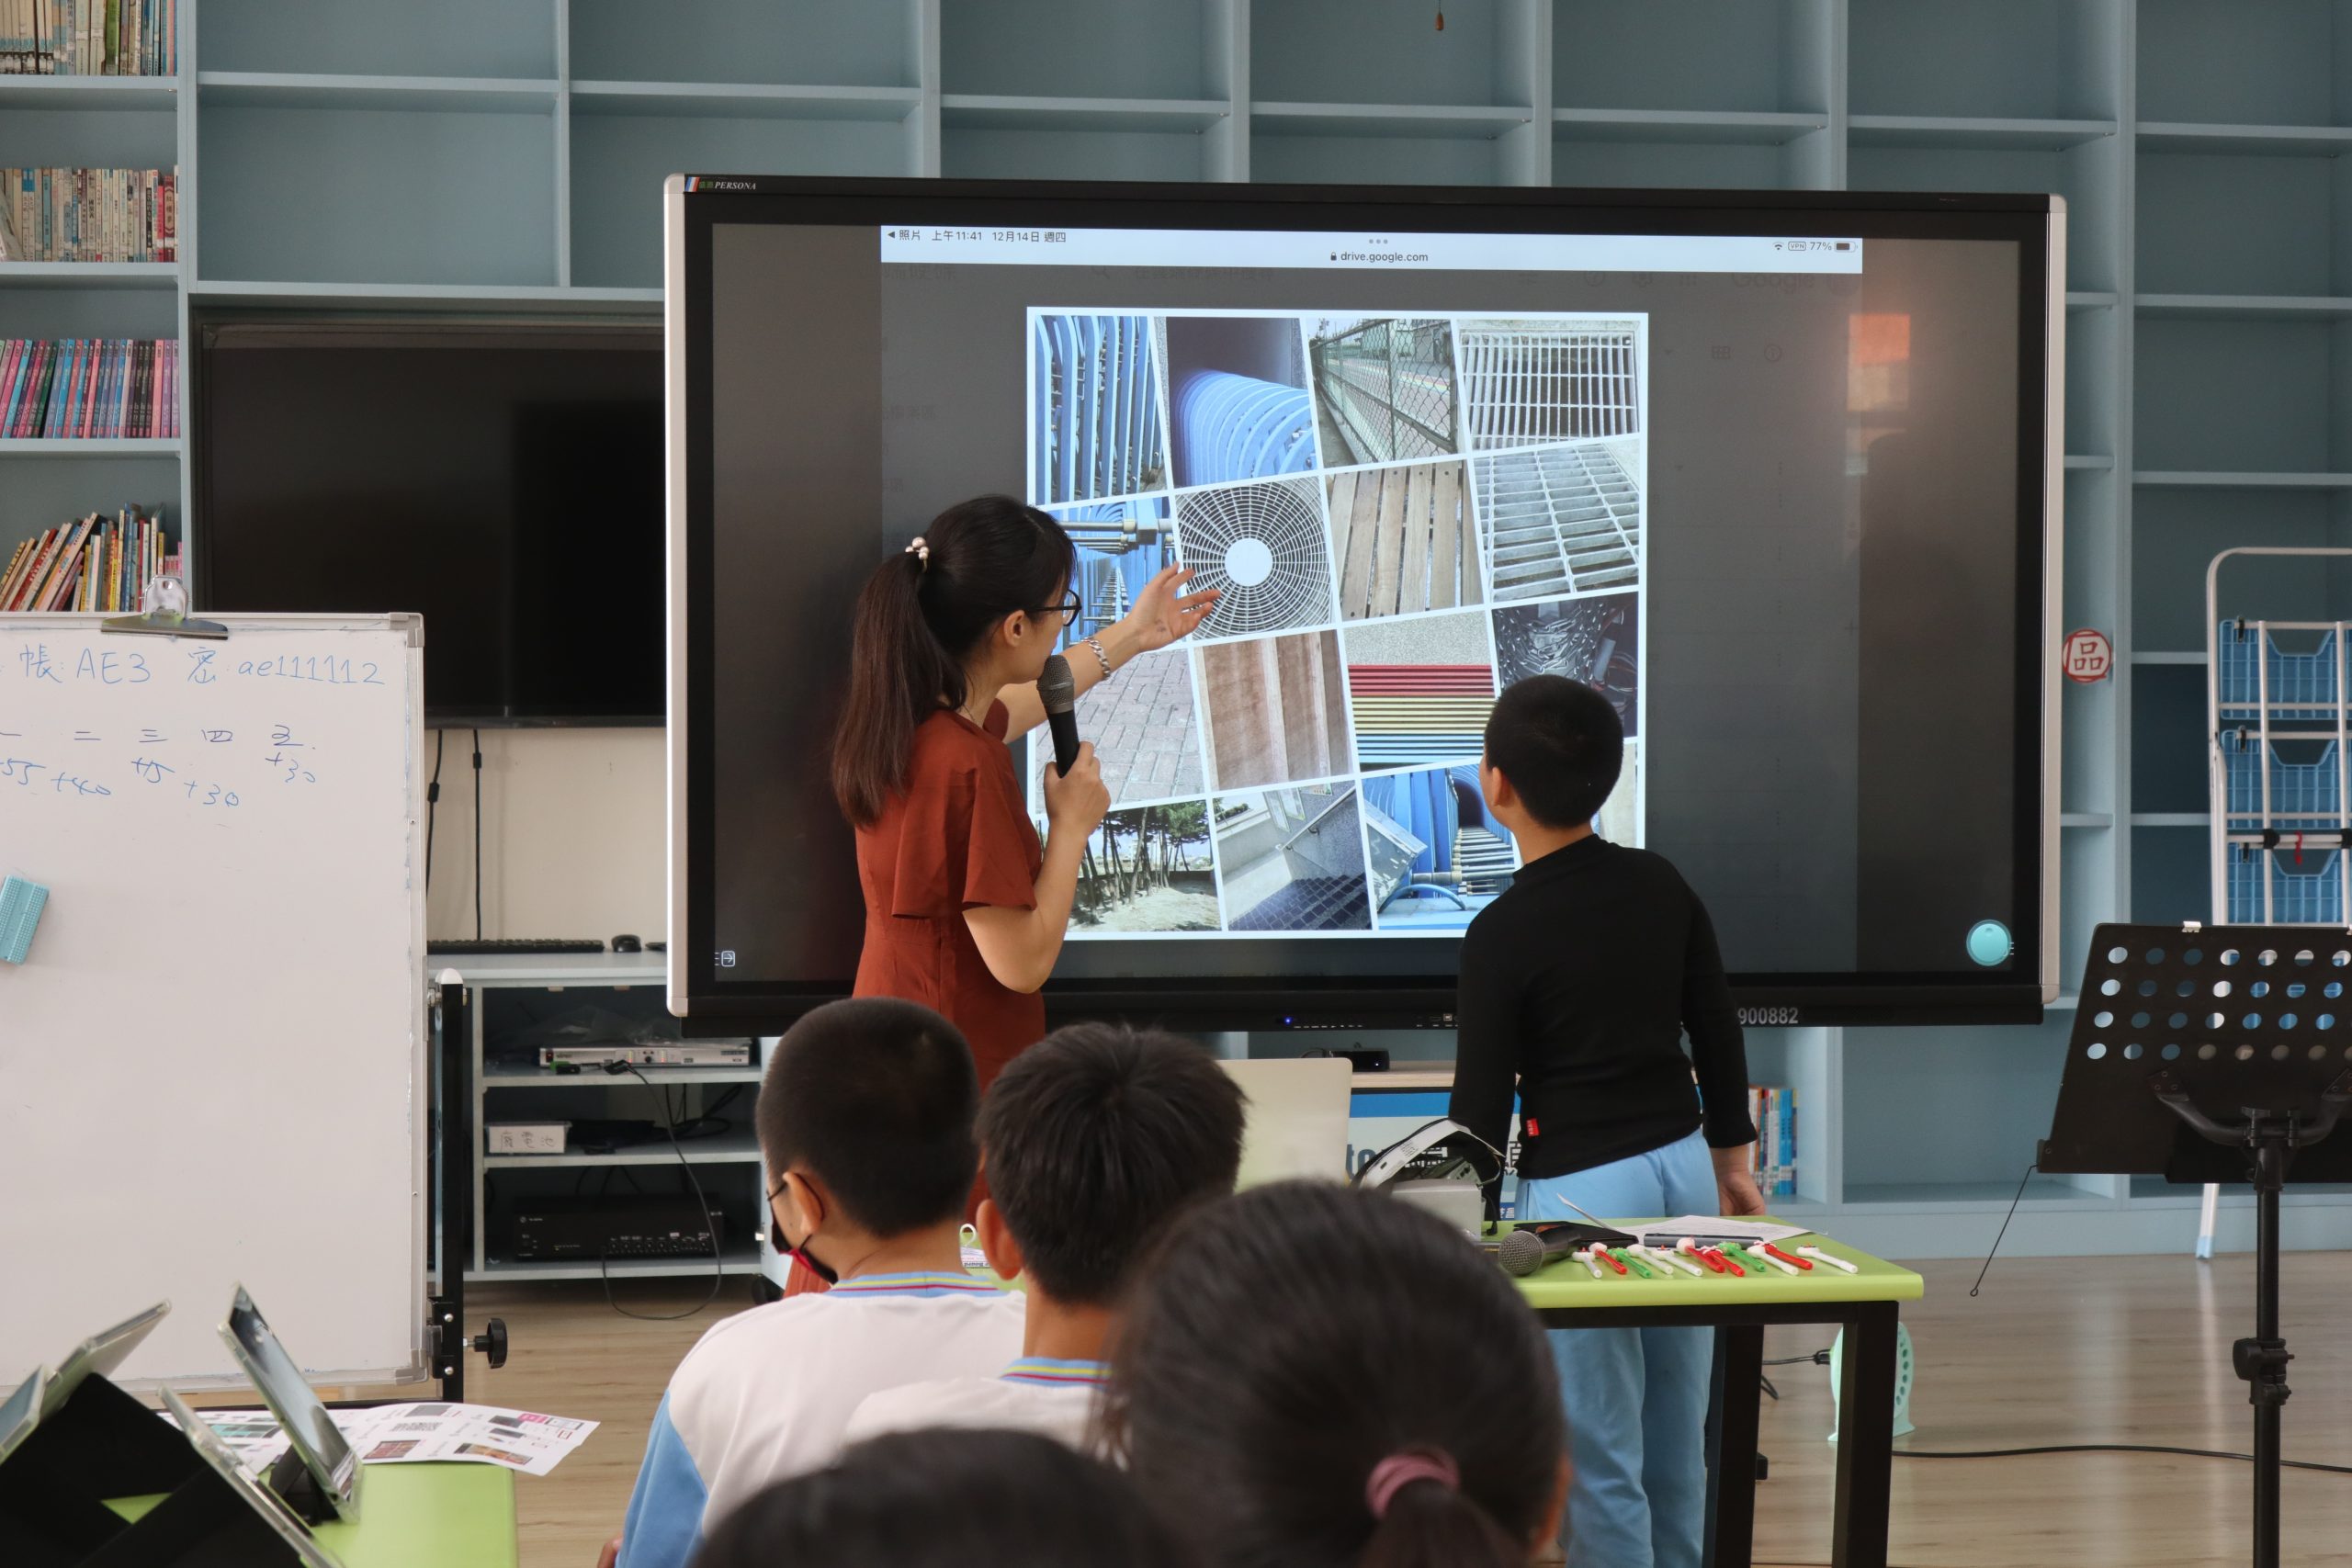 112學年度第一學期於雲林縣麥寮鄉明禮國民小學施辦自拍拼圖課程實作紀錄系列照片共20張